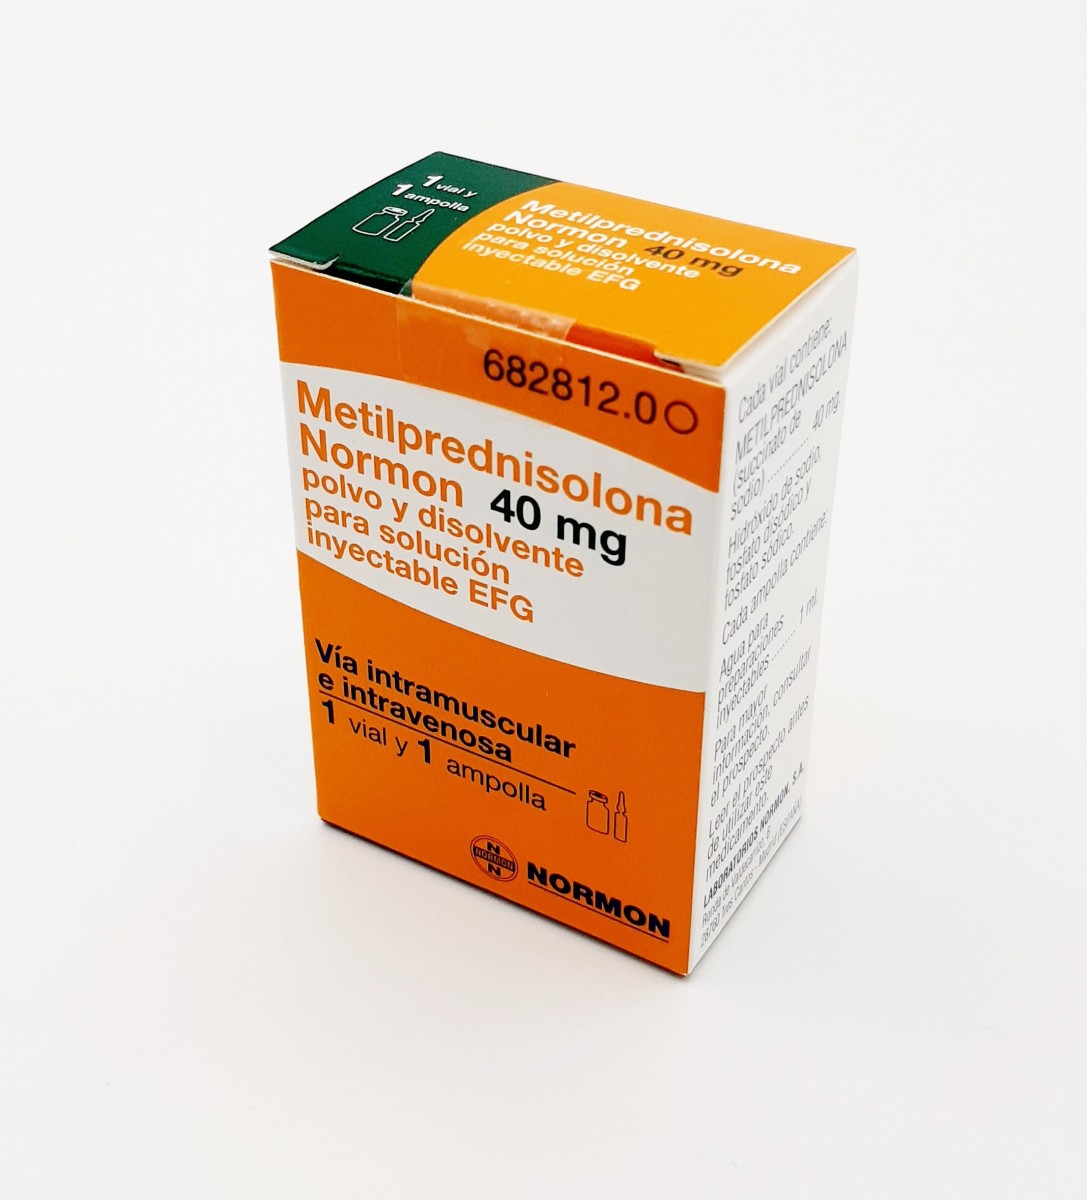 METILPREDNISOLONA NORMON 40 mg POLVO Y DISOLVENTE PARA SOLUCION INYECTABLE EFG , 1 vial + 1 ampolla de disolvente fotografía del envase.